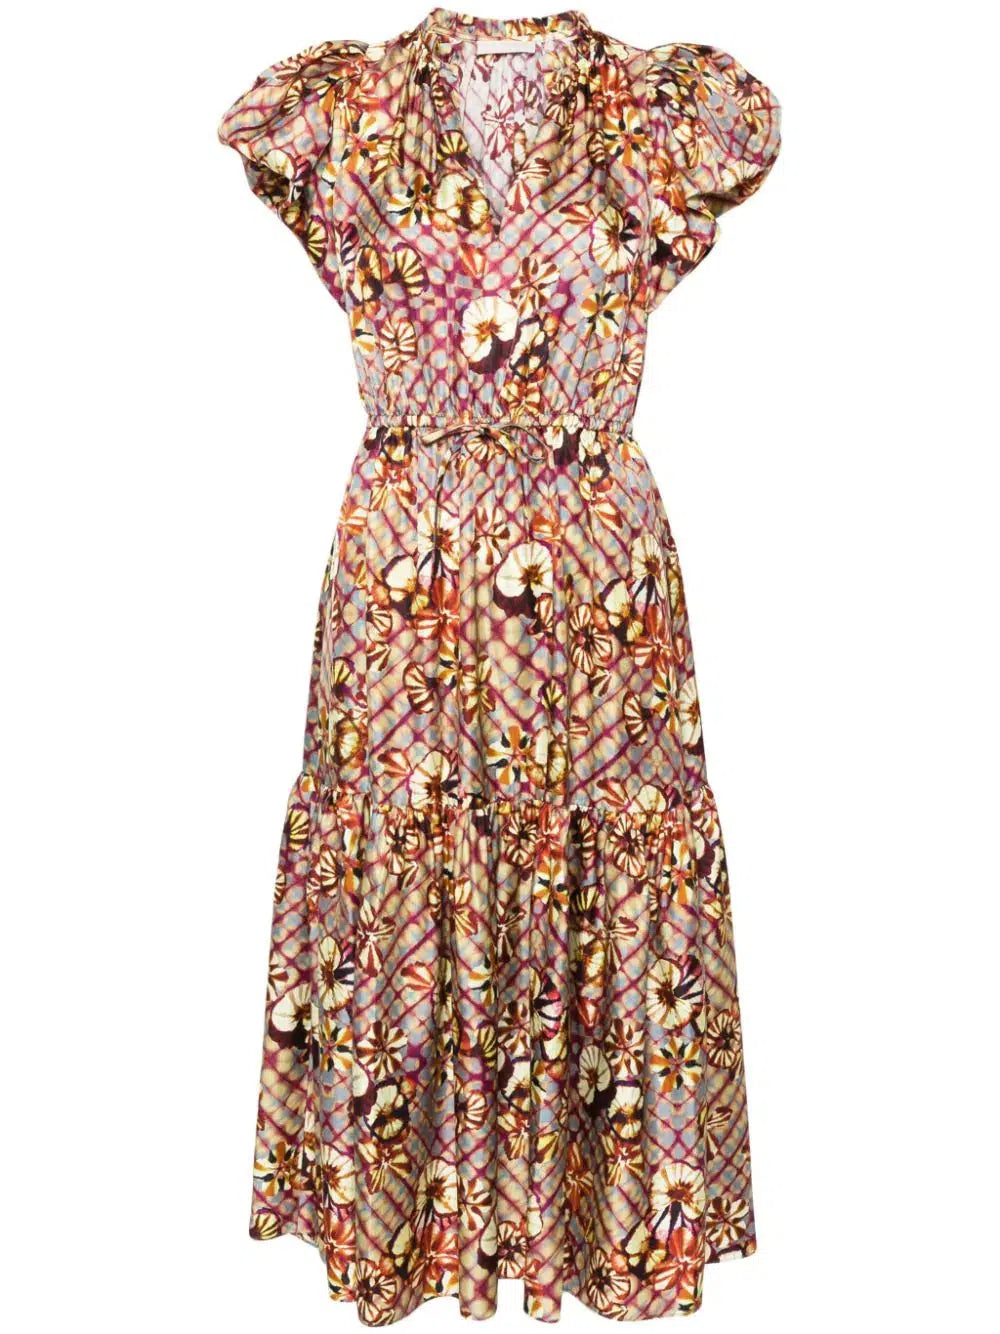 Scarlett Dress in Pansy-Dress-Ulla Johnson-Debs Boutique